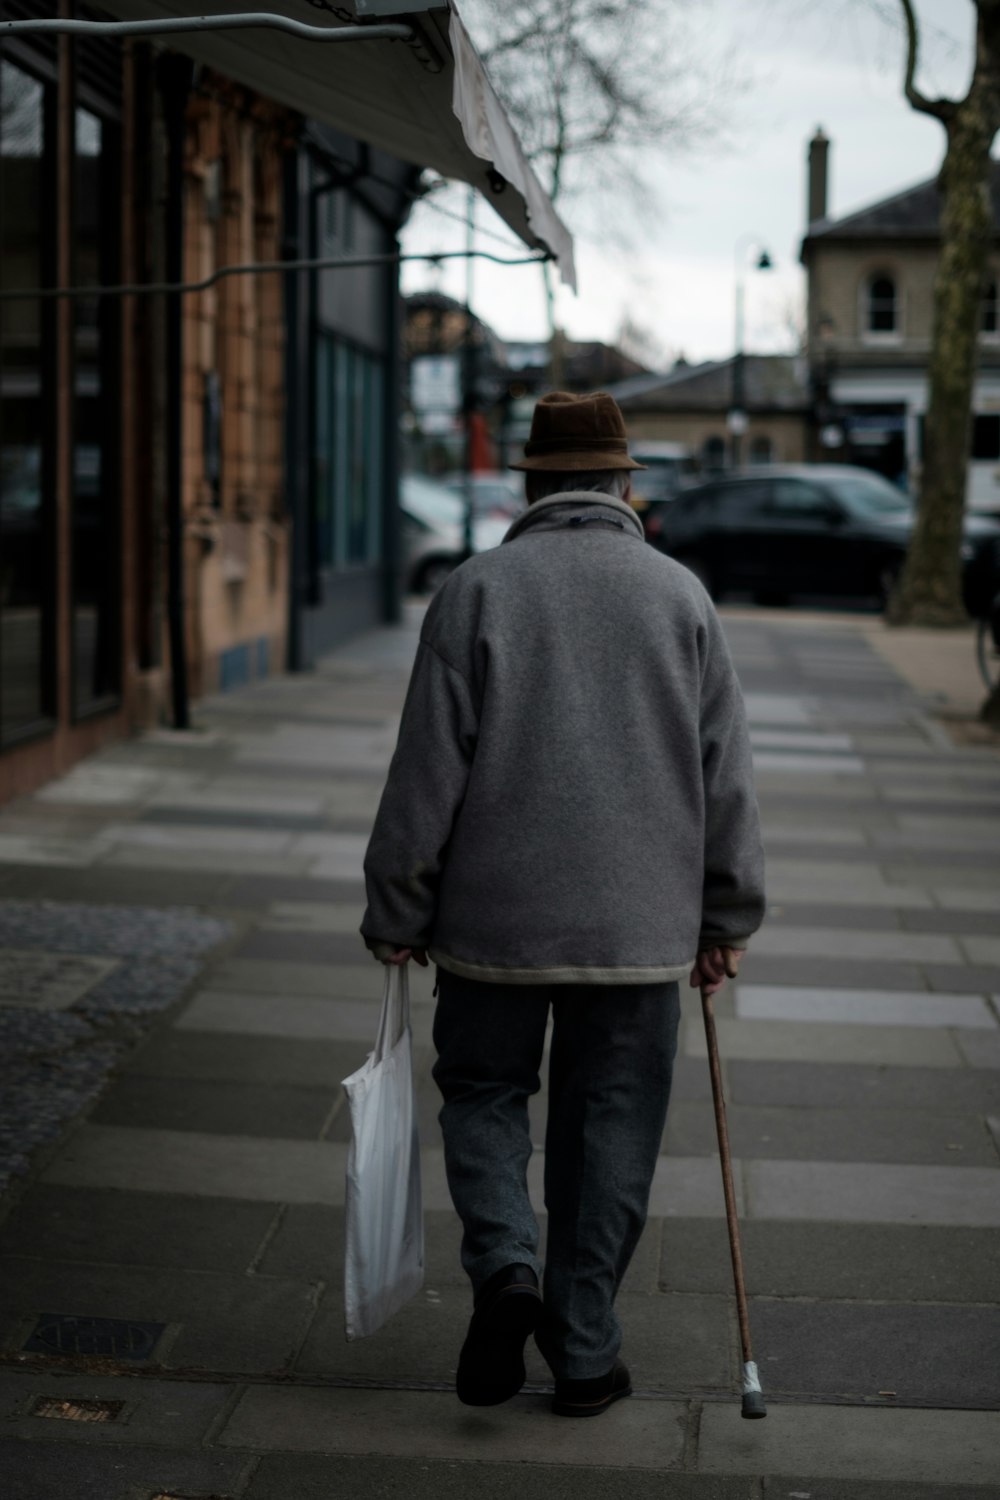 homme marchant à l’aide d’une canne brune portant un sac blanc près de bâtiments bruns pendant la journée